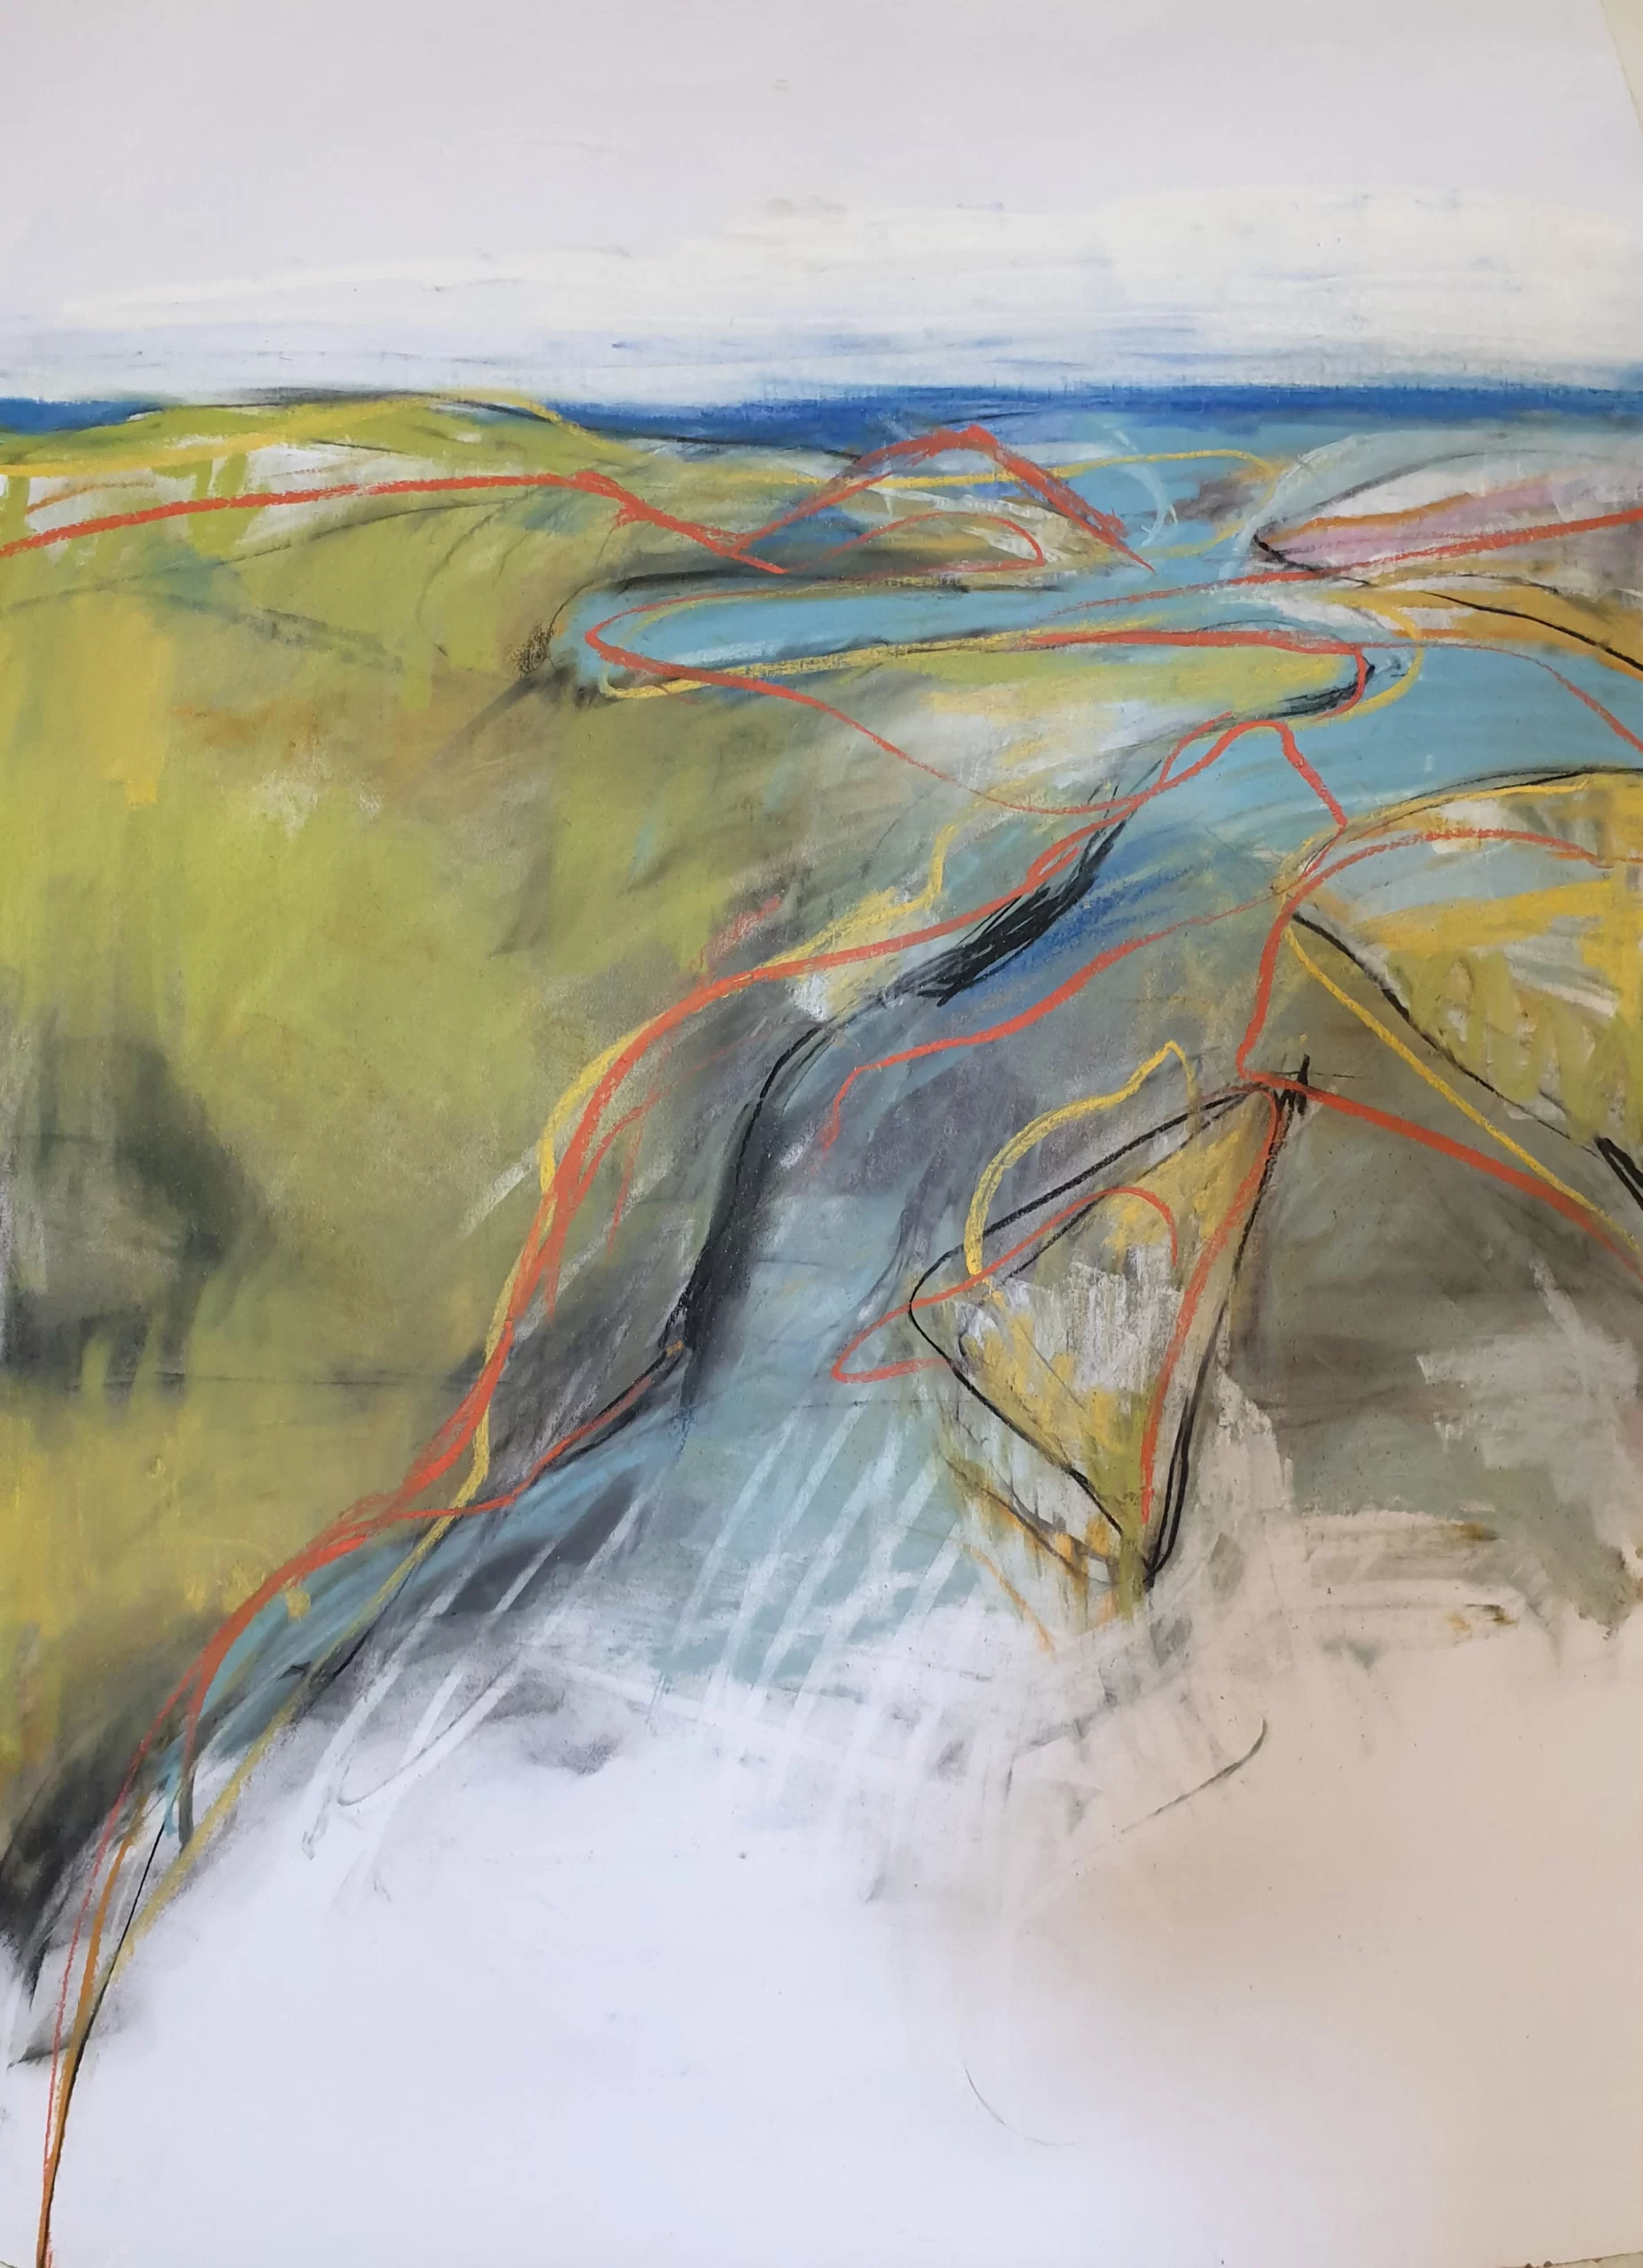 LEONIE CHINN ''Tallebudgera Creek' chalk and charcoal on paper. 59 X 84 cm.